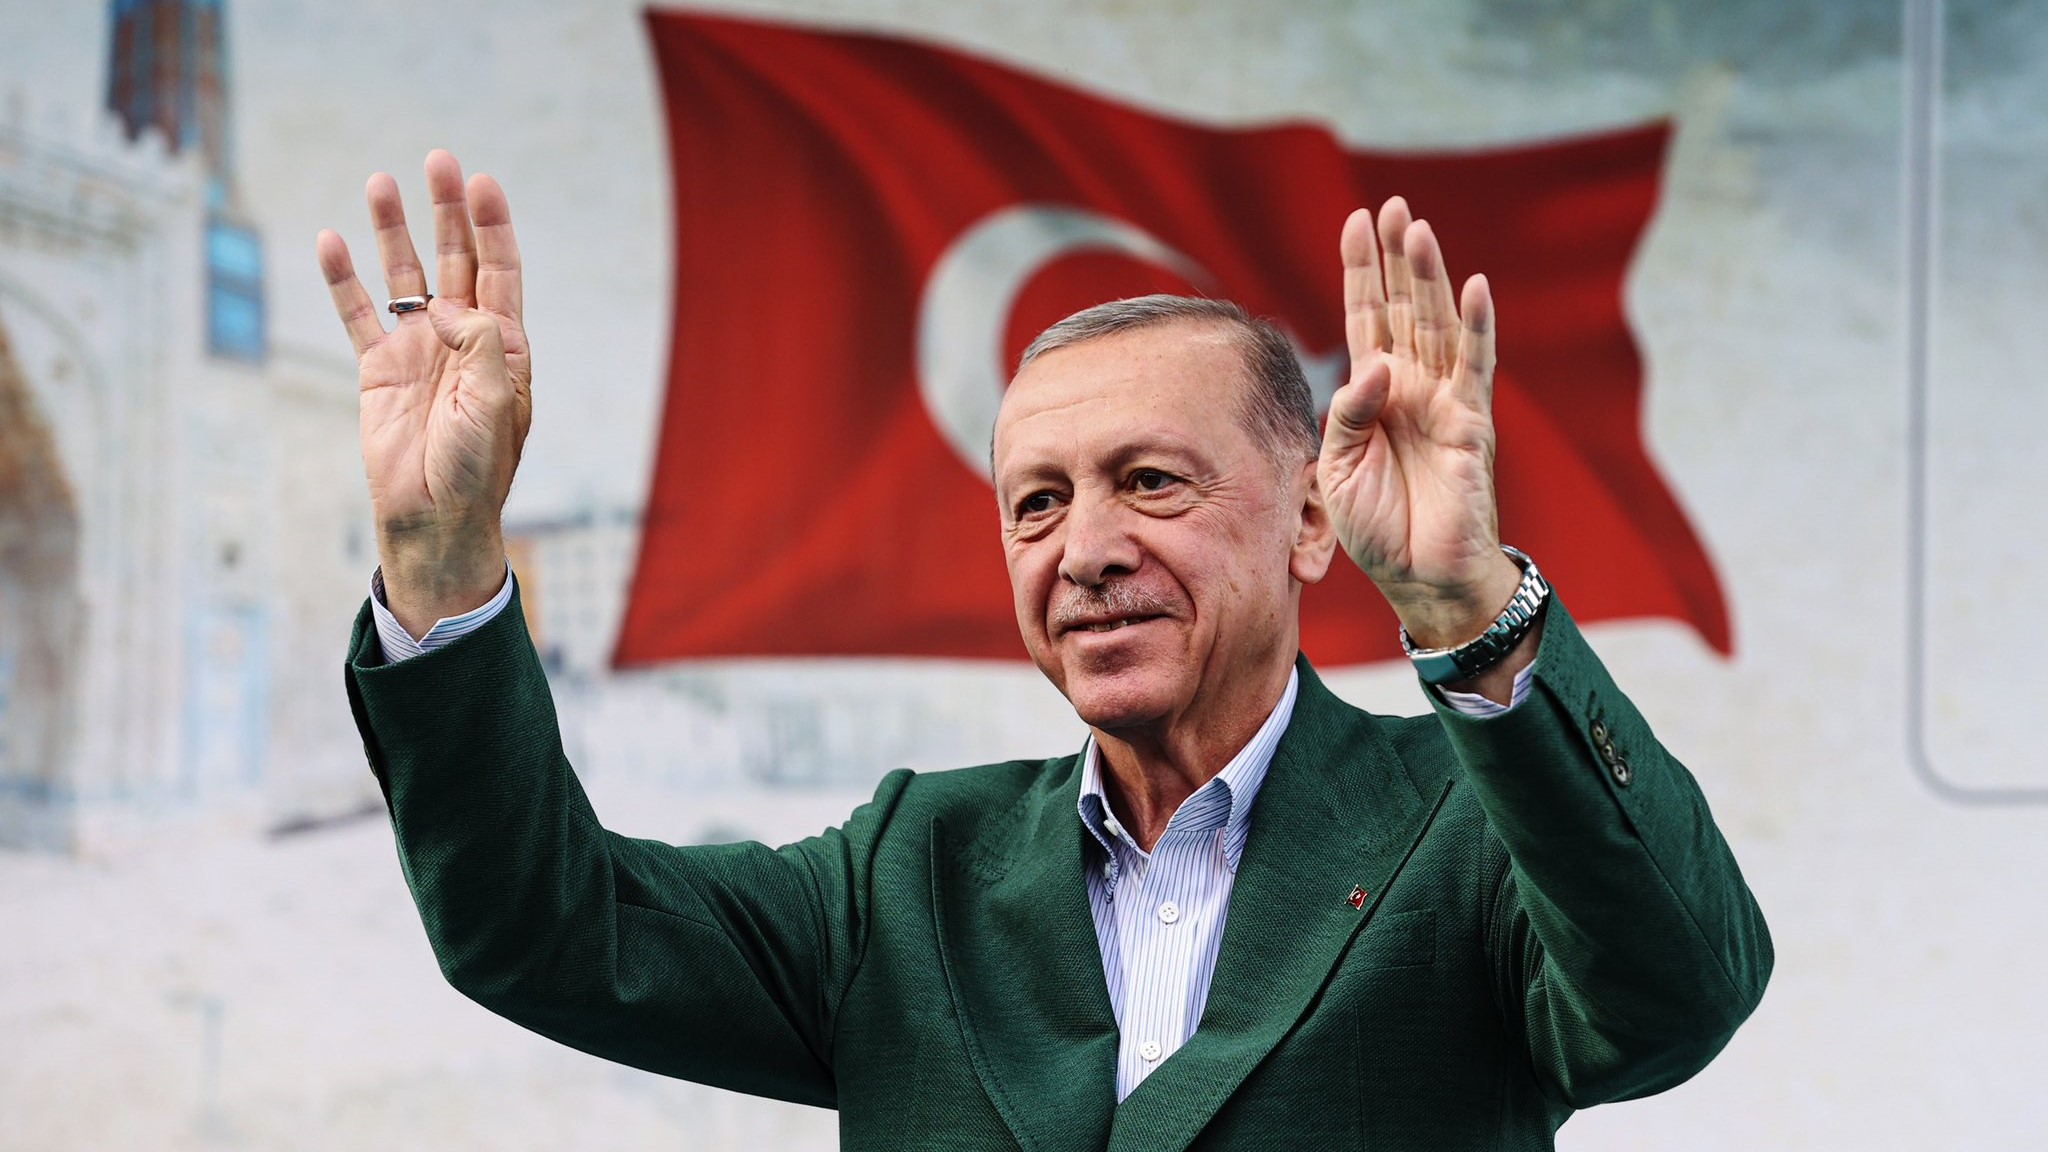 Le Secrétaire Général Félicite le Président Erdogan et le Peuple Turc